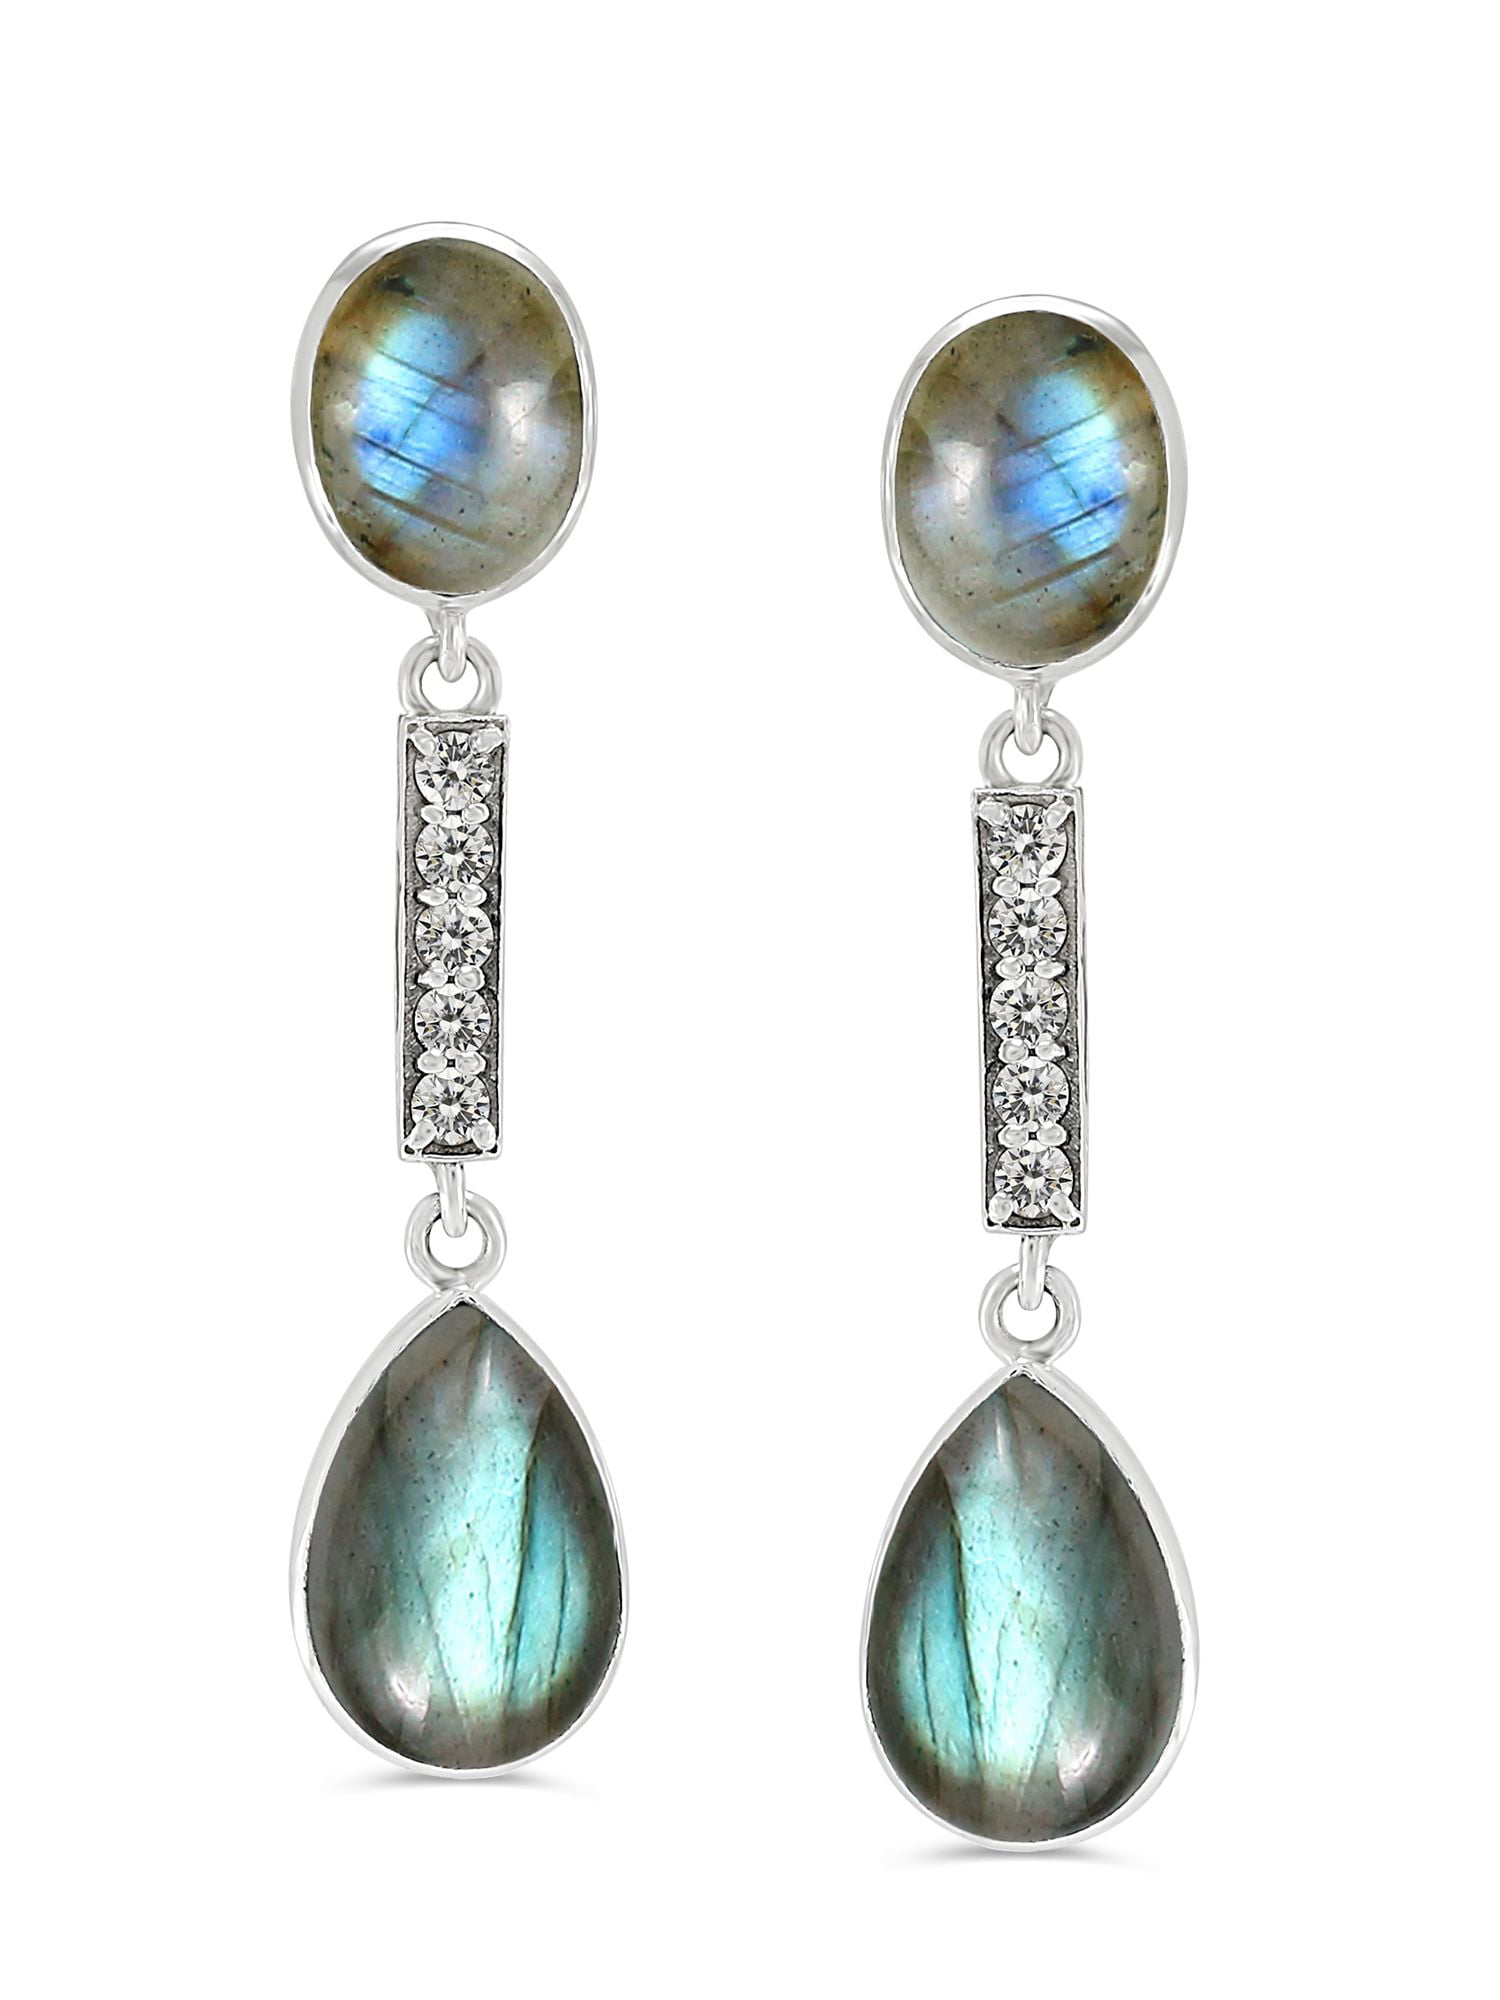 Details about   Solid 925 Sterling Silver Jewelry Labradorite Gemstone Office Wear Drop Earring